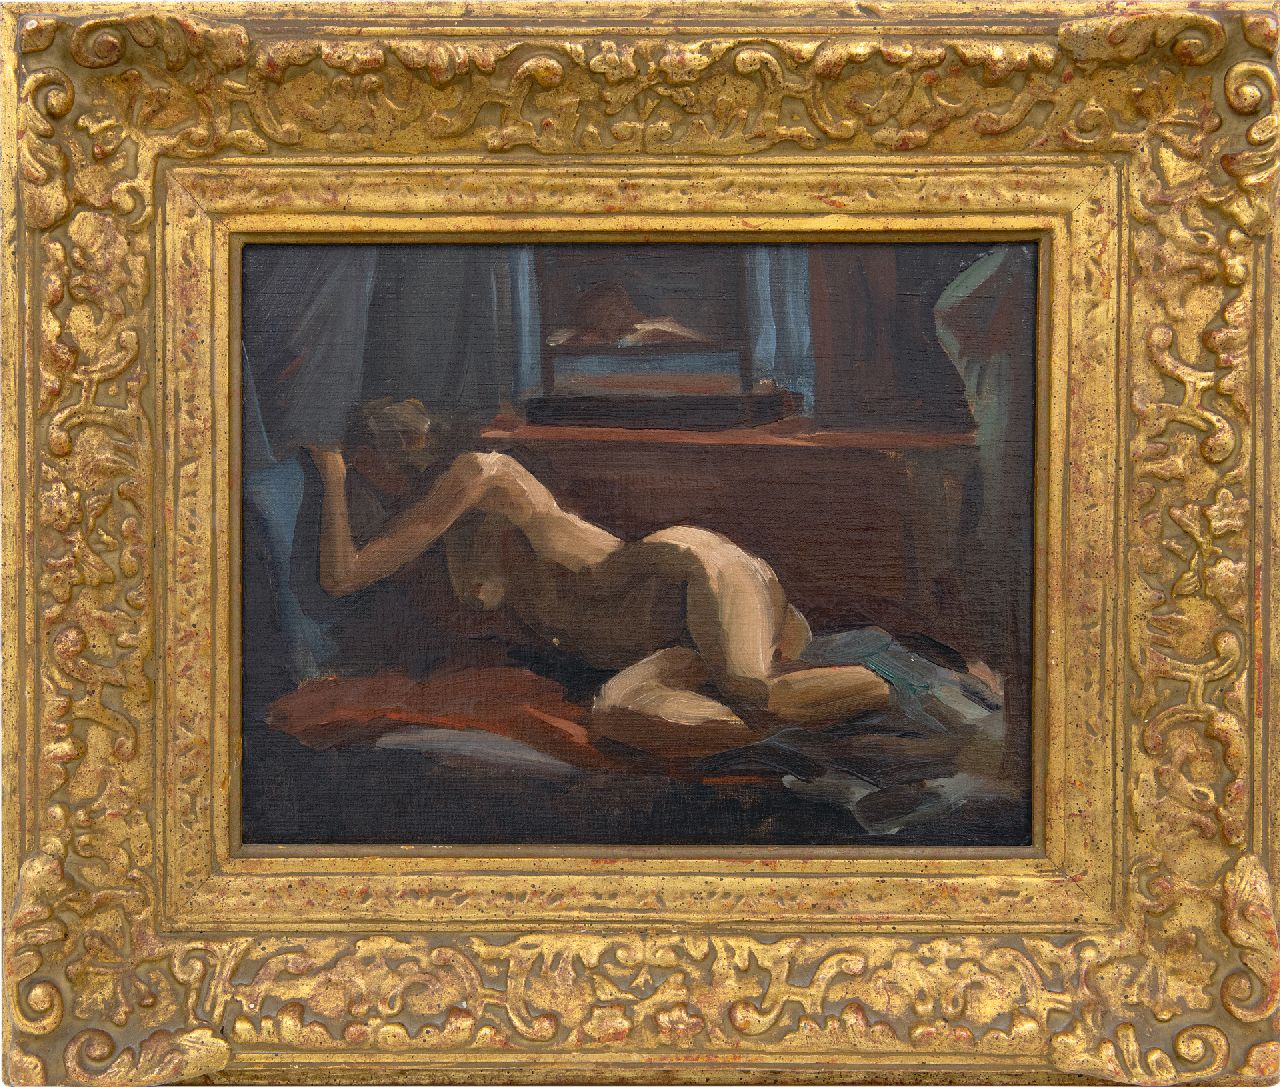 Maze P.L.  | 'Paul' Lucien Maze | Schilderijen te koop aangeboden | Liggend naakt en voyeur, olieverf op doek op board 27,0 x 34,8 cm